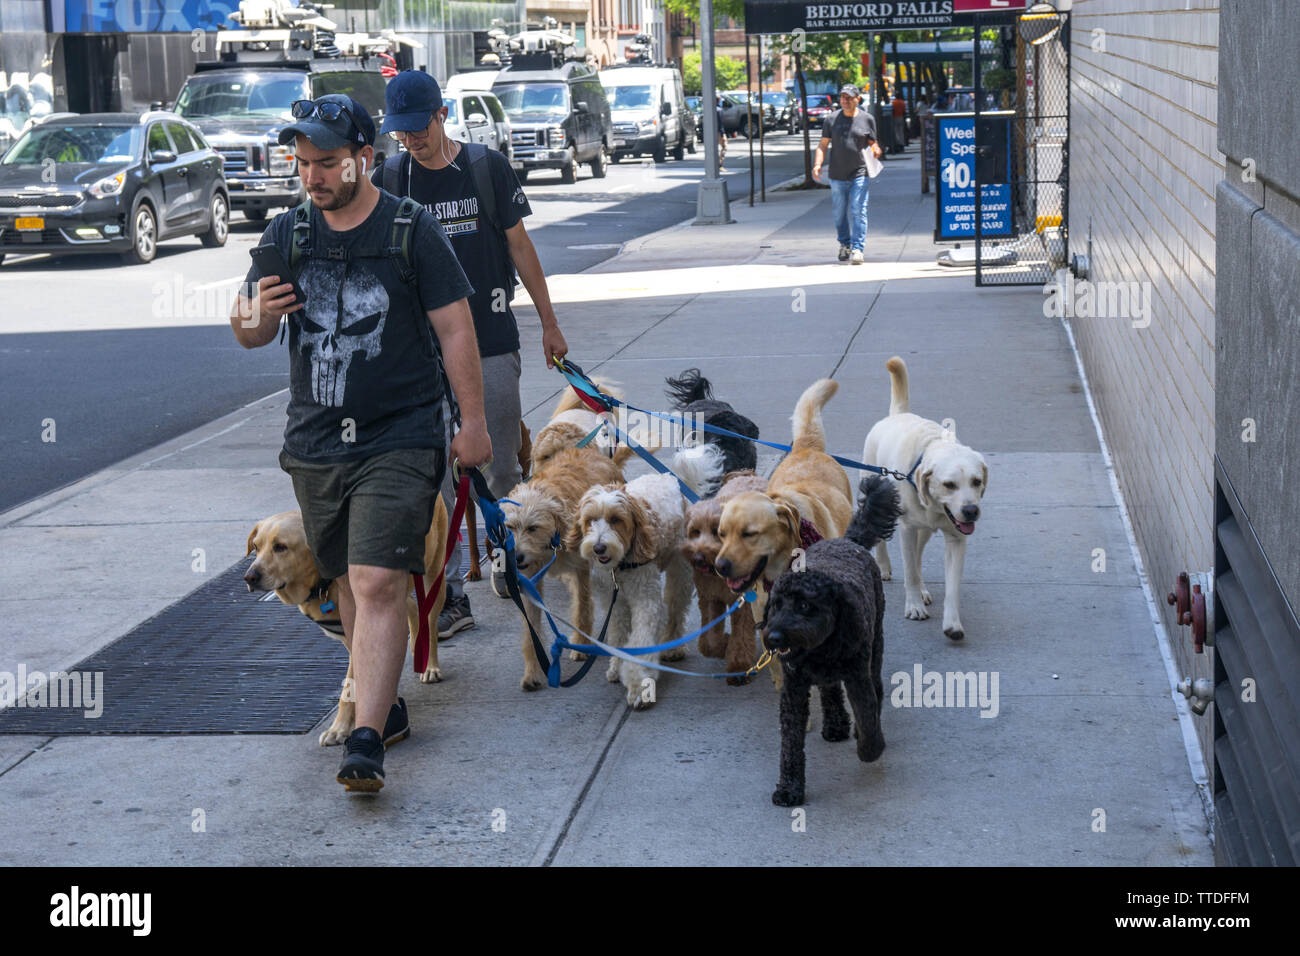 Professional cane camminare può essere un business lucrativo nell'Upper East Side di Manhattan dove i canini sono membri a pieno titolo della famiglia. East 67th St. vicino Foto Stock